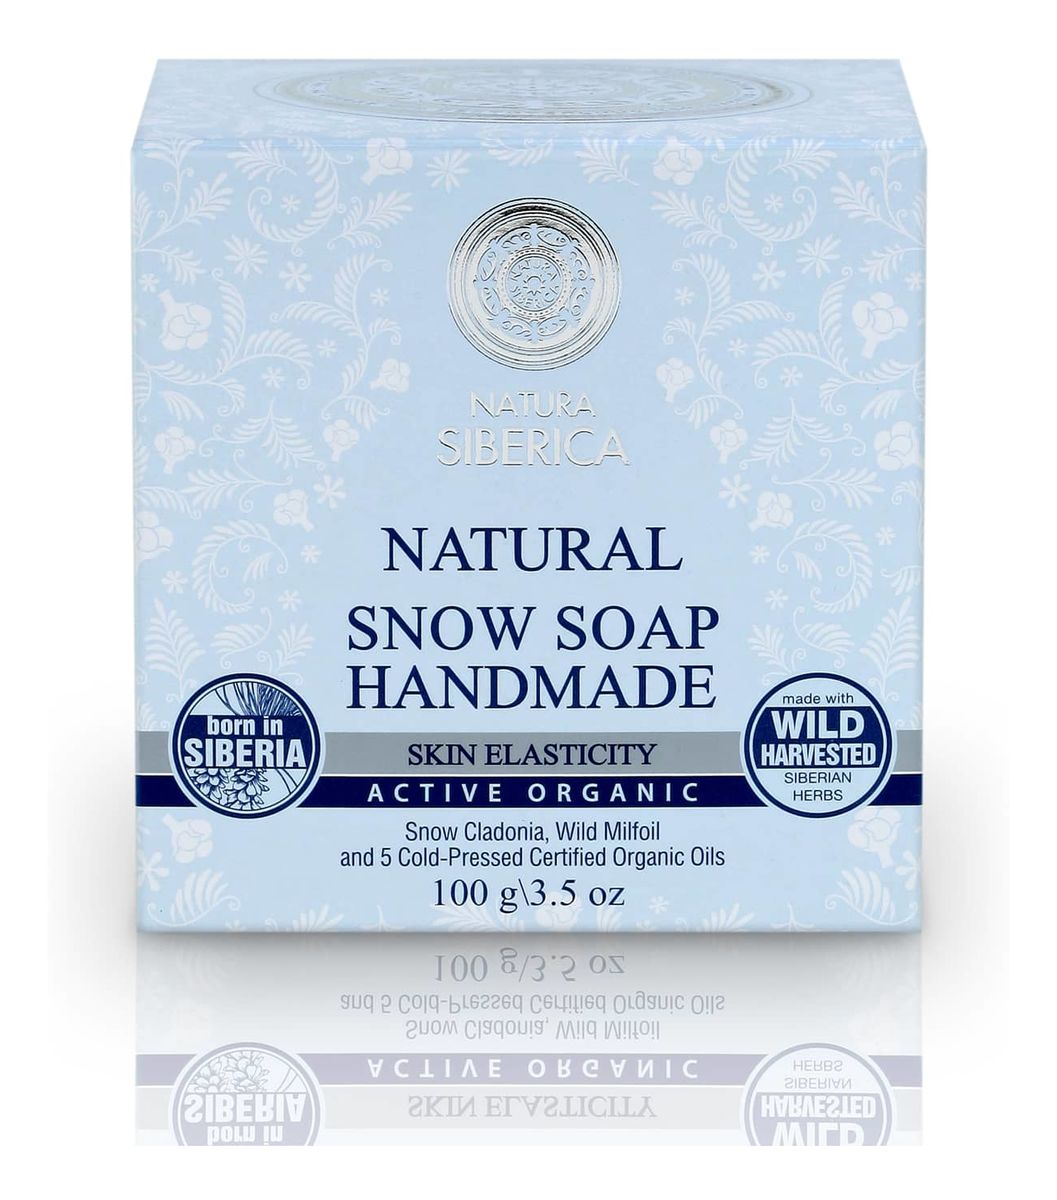 naturalne mydło śnieżne poprawa elastyczności skóry